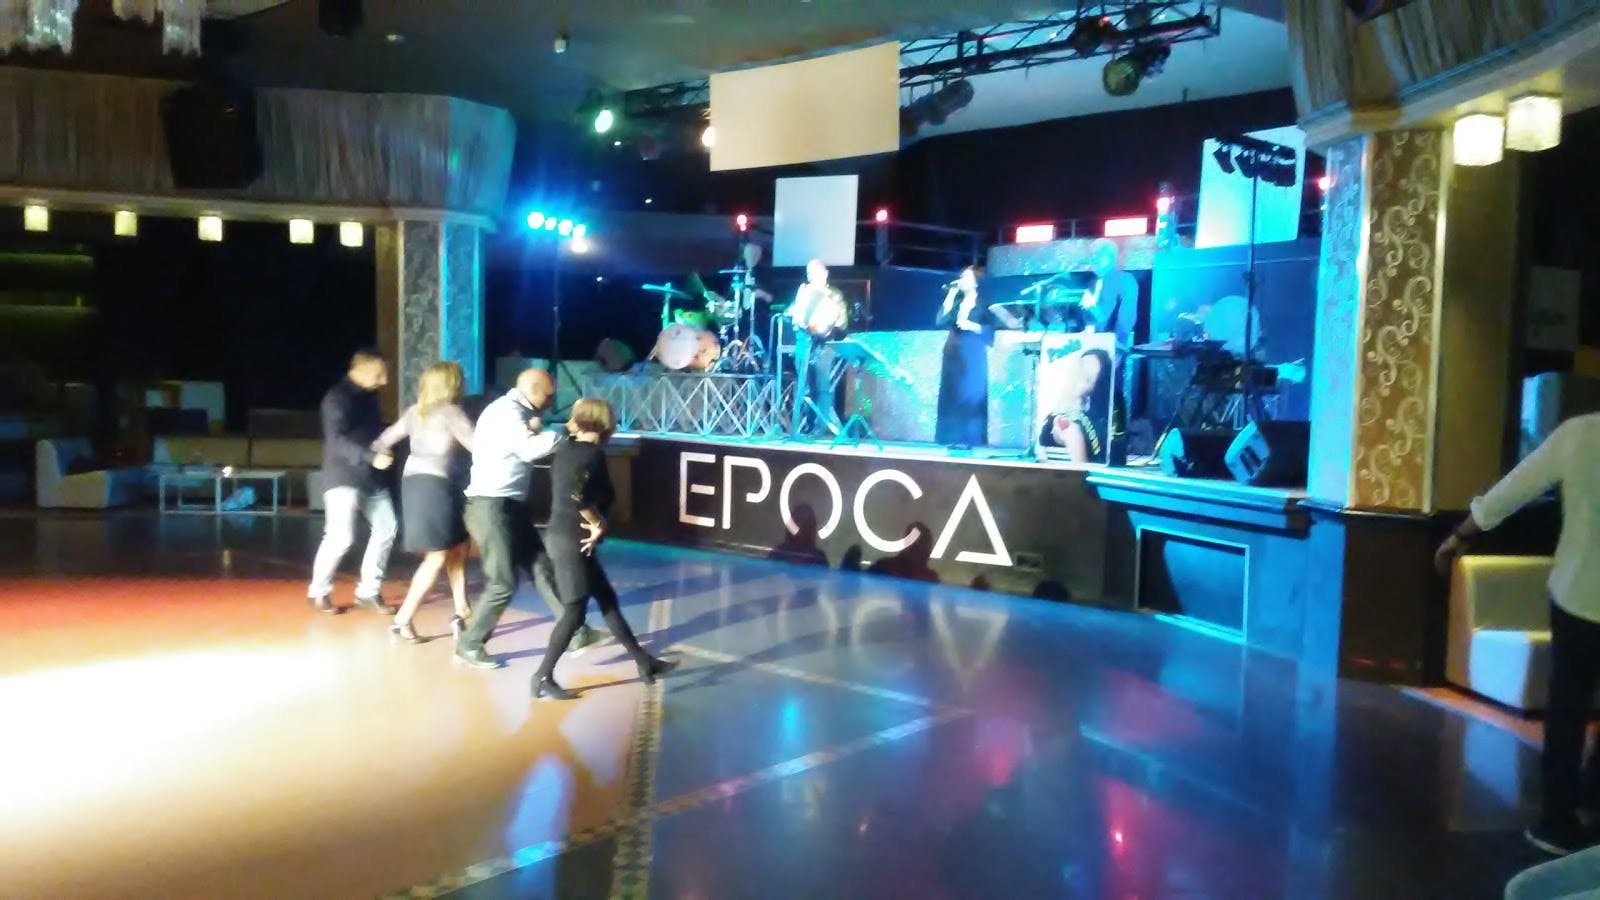 Image - Epoca Disco